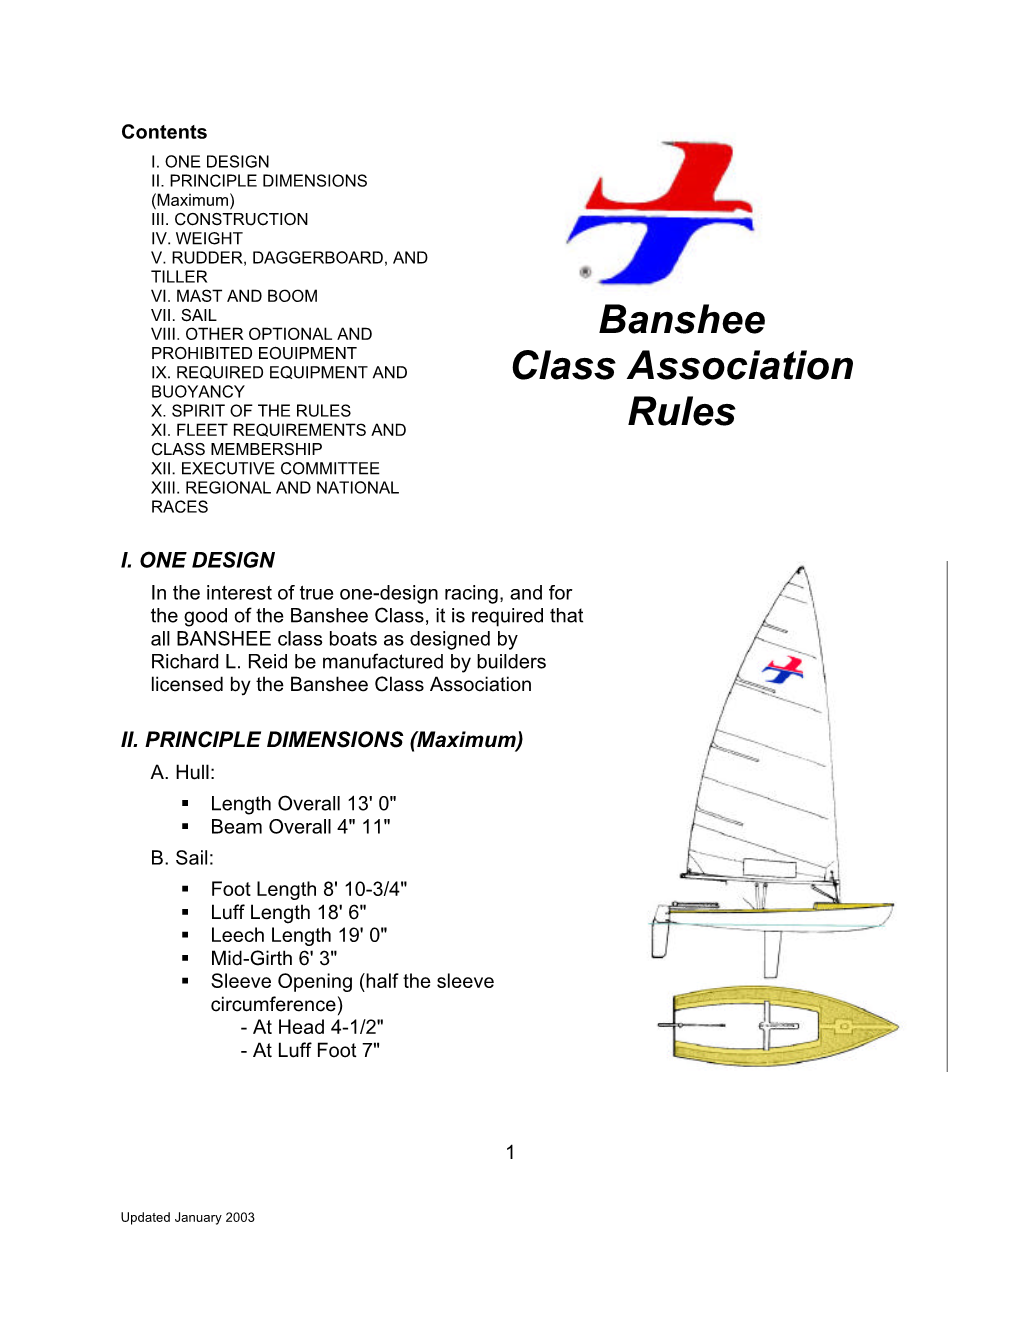 Banshee Class Association Rules